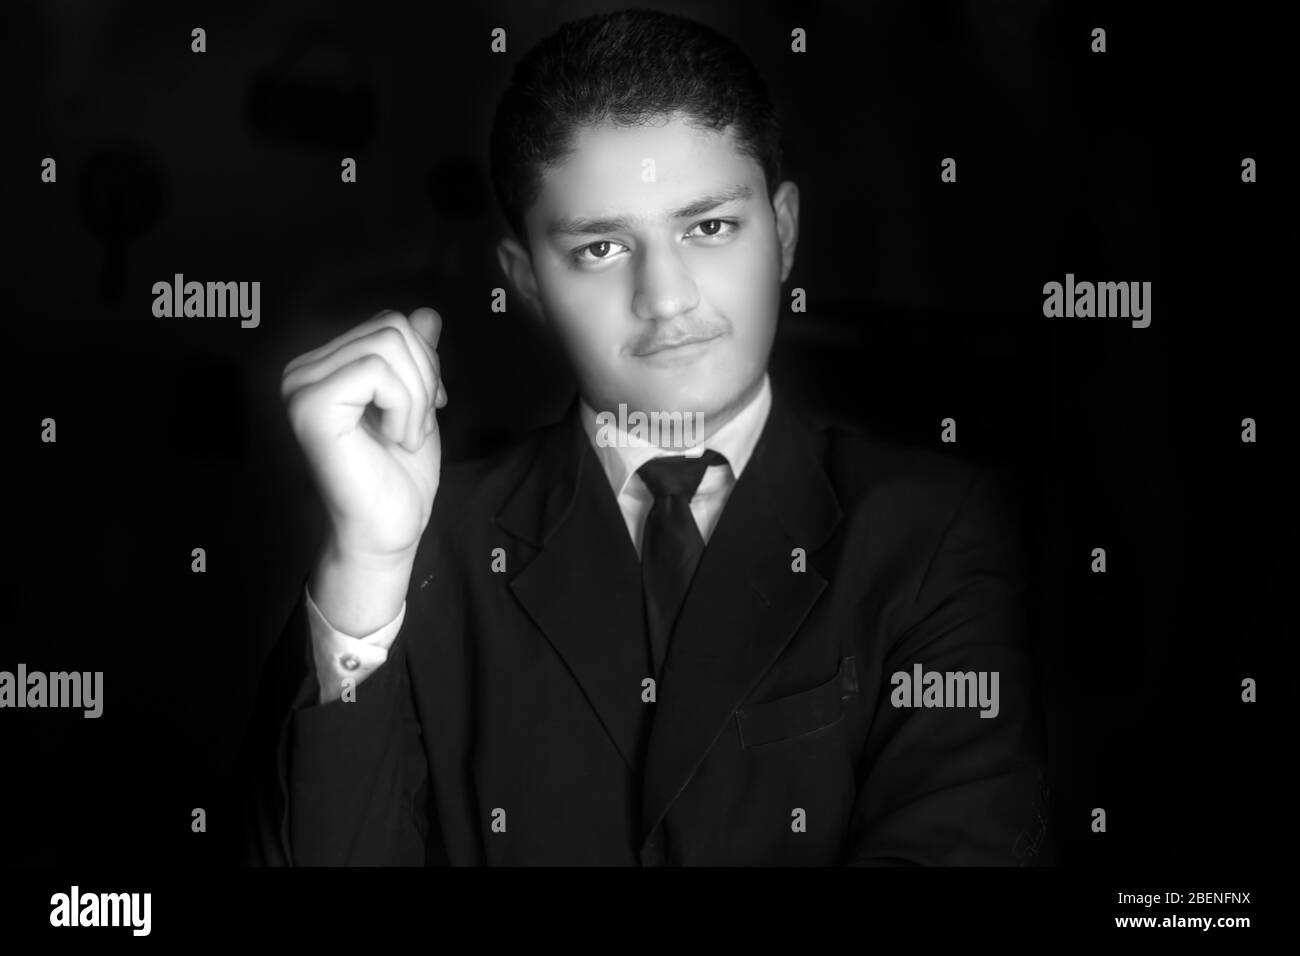 Porträtaufnahme eines jungen Geschäftsmannes, der auf schwarzem Hintergrund mit gekreuzten Händen und rechter Hand in der Nähe seiner Wange posiert. Horizontale Aufnahme von Geschäftsmann in blu Stockfoto